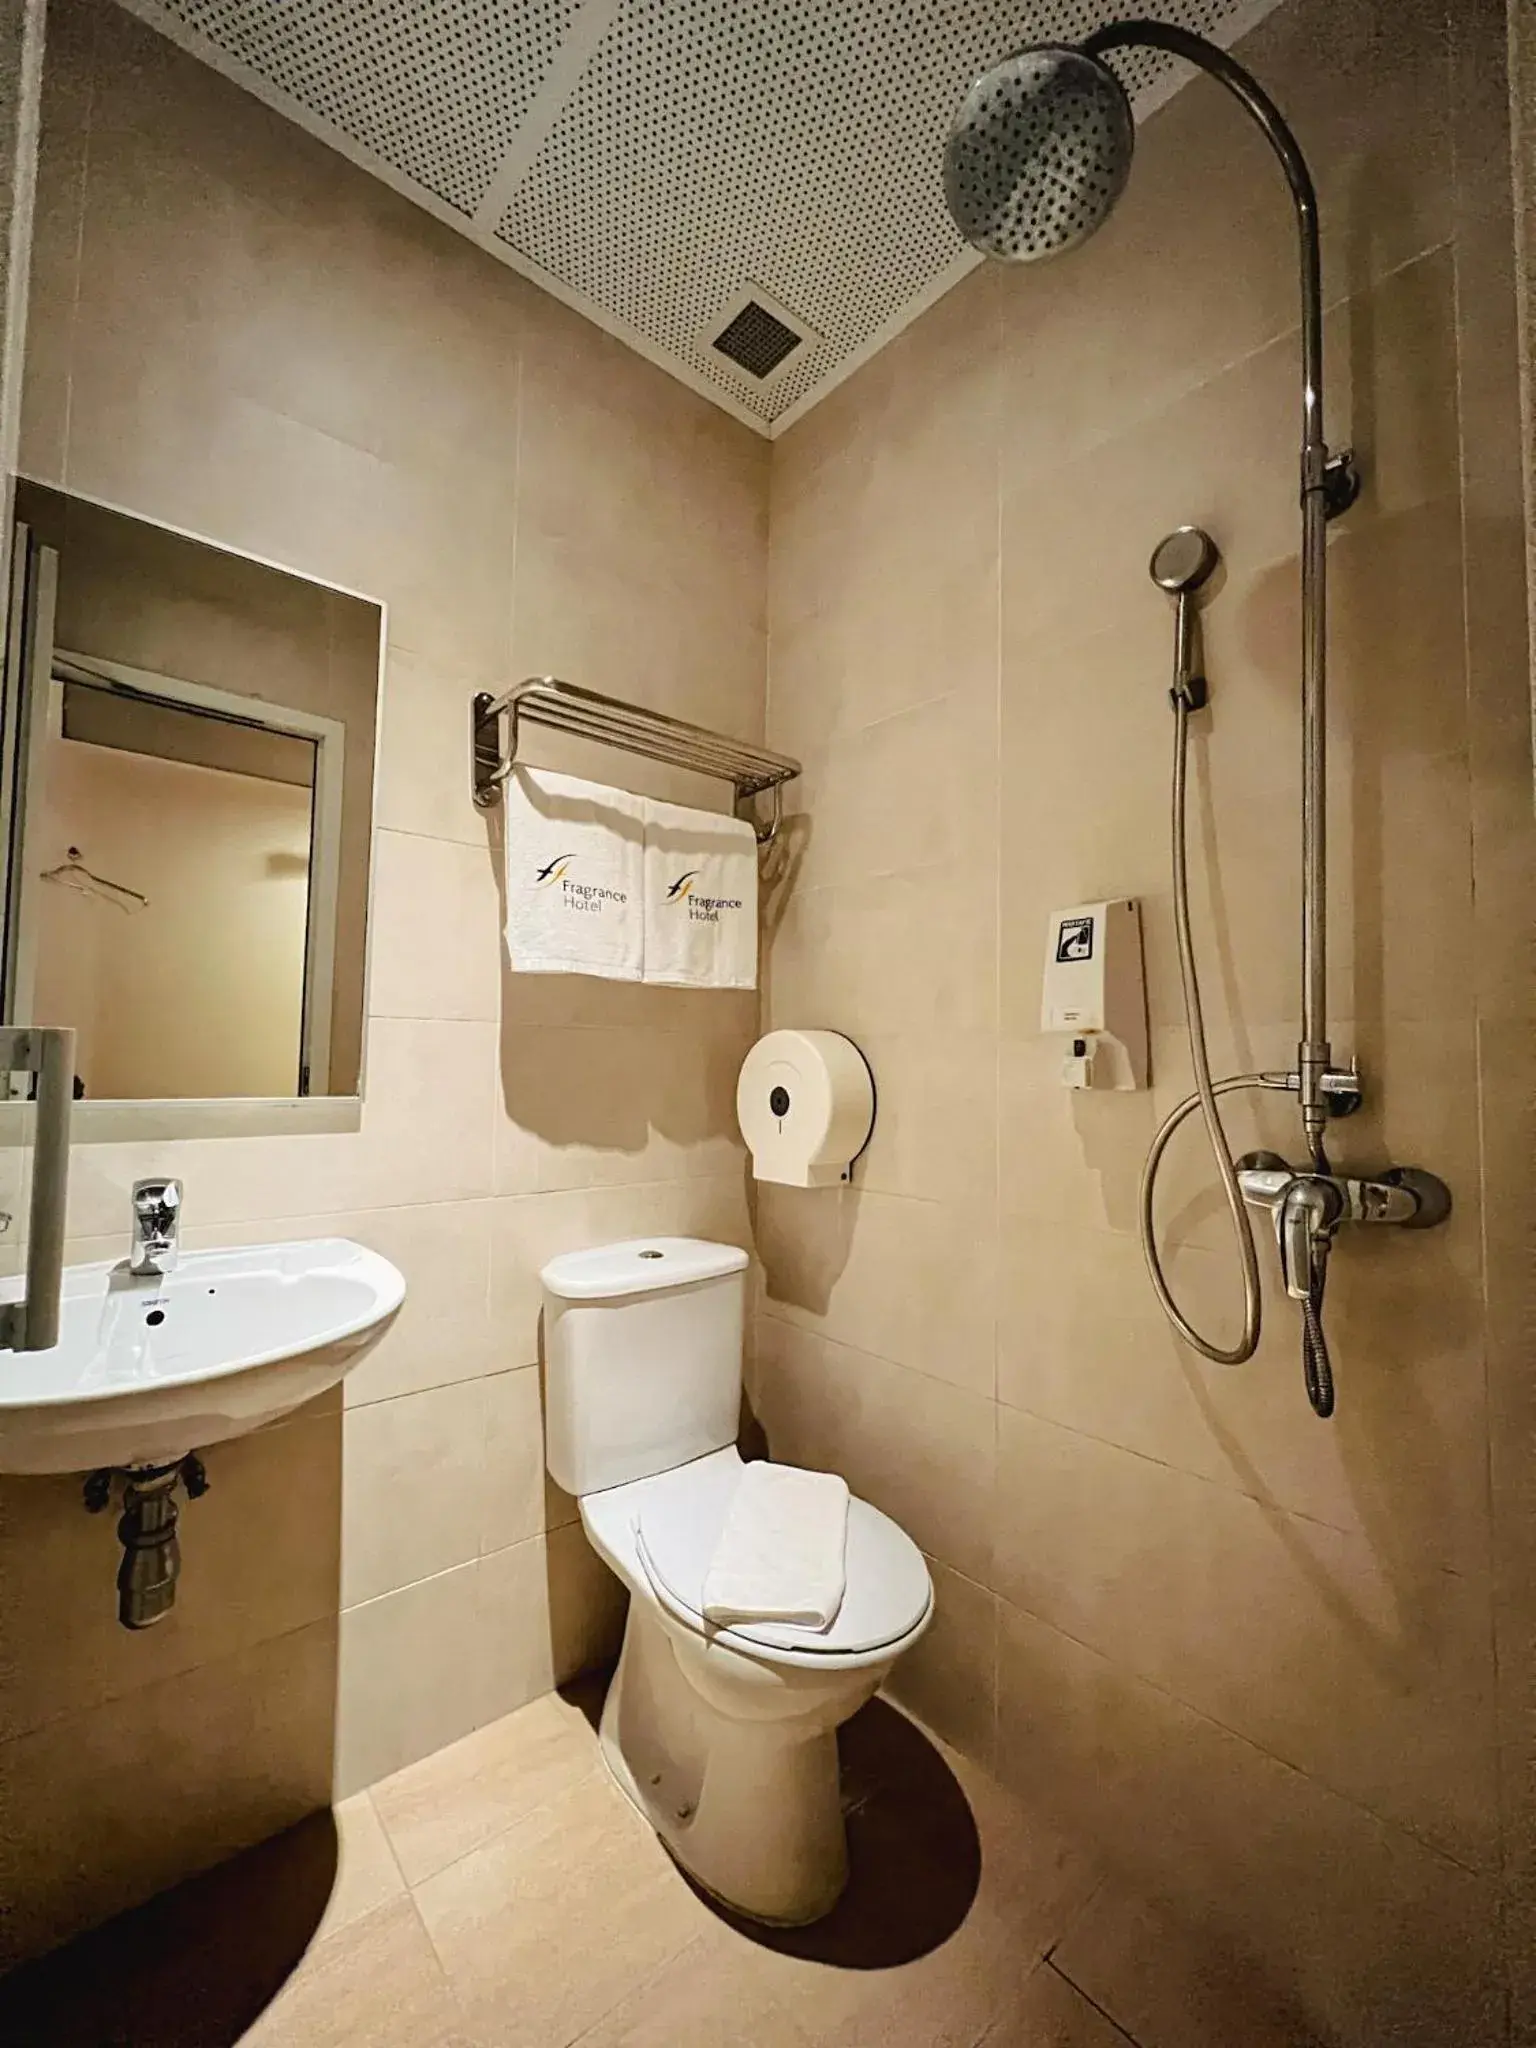 Bathroom in Fragrance Hotel - Viva